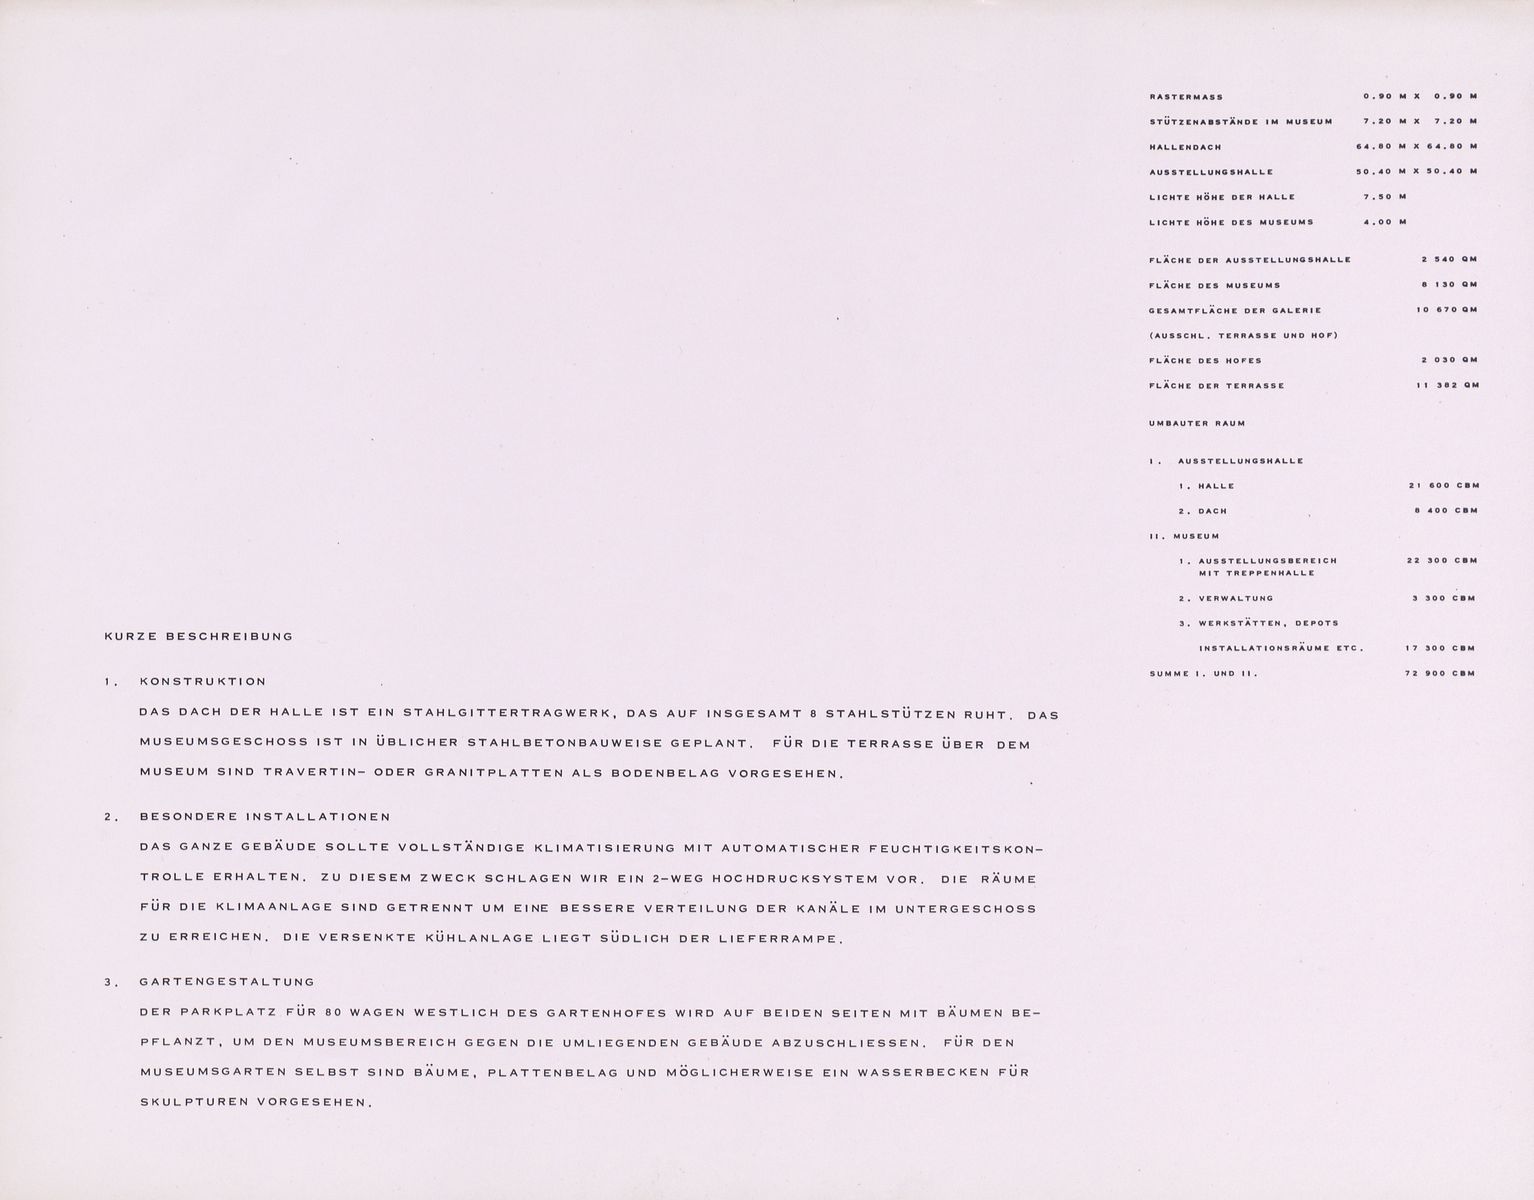 Ludwig Mies van der Rohe: Präsentationsmappe für den Bau der Neuen Nationalgalerie. (c) bpk / Kunstbibliothek, SMB / Dietmar Katz